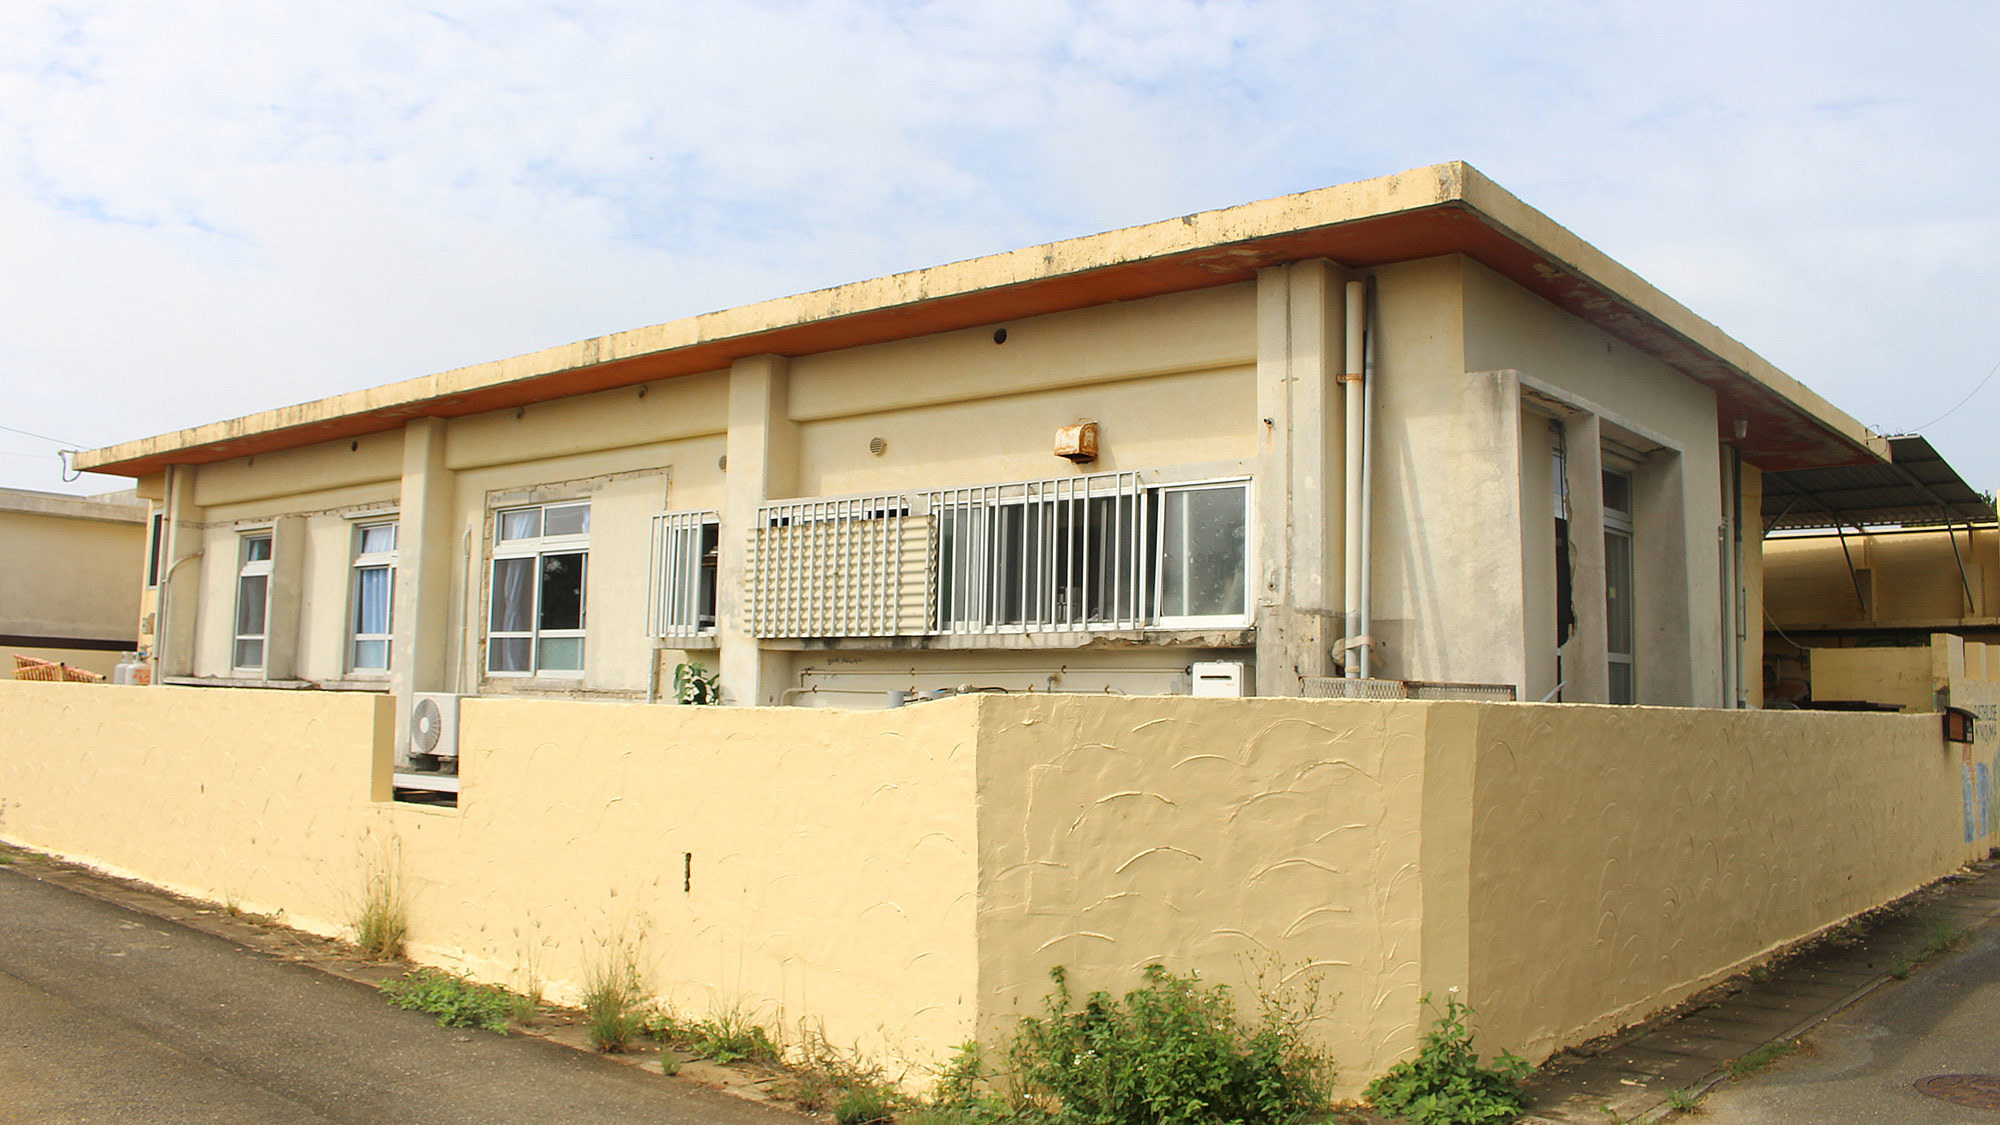 ・ゲストハウス宮古島の外観、沖縄の一般的な鉄筋コンクリート造りの一軒家を改装した宿です